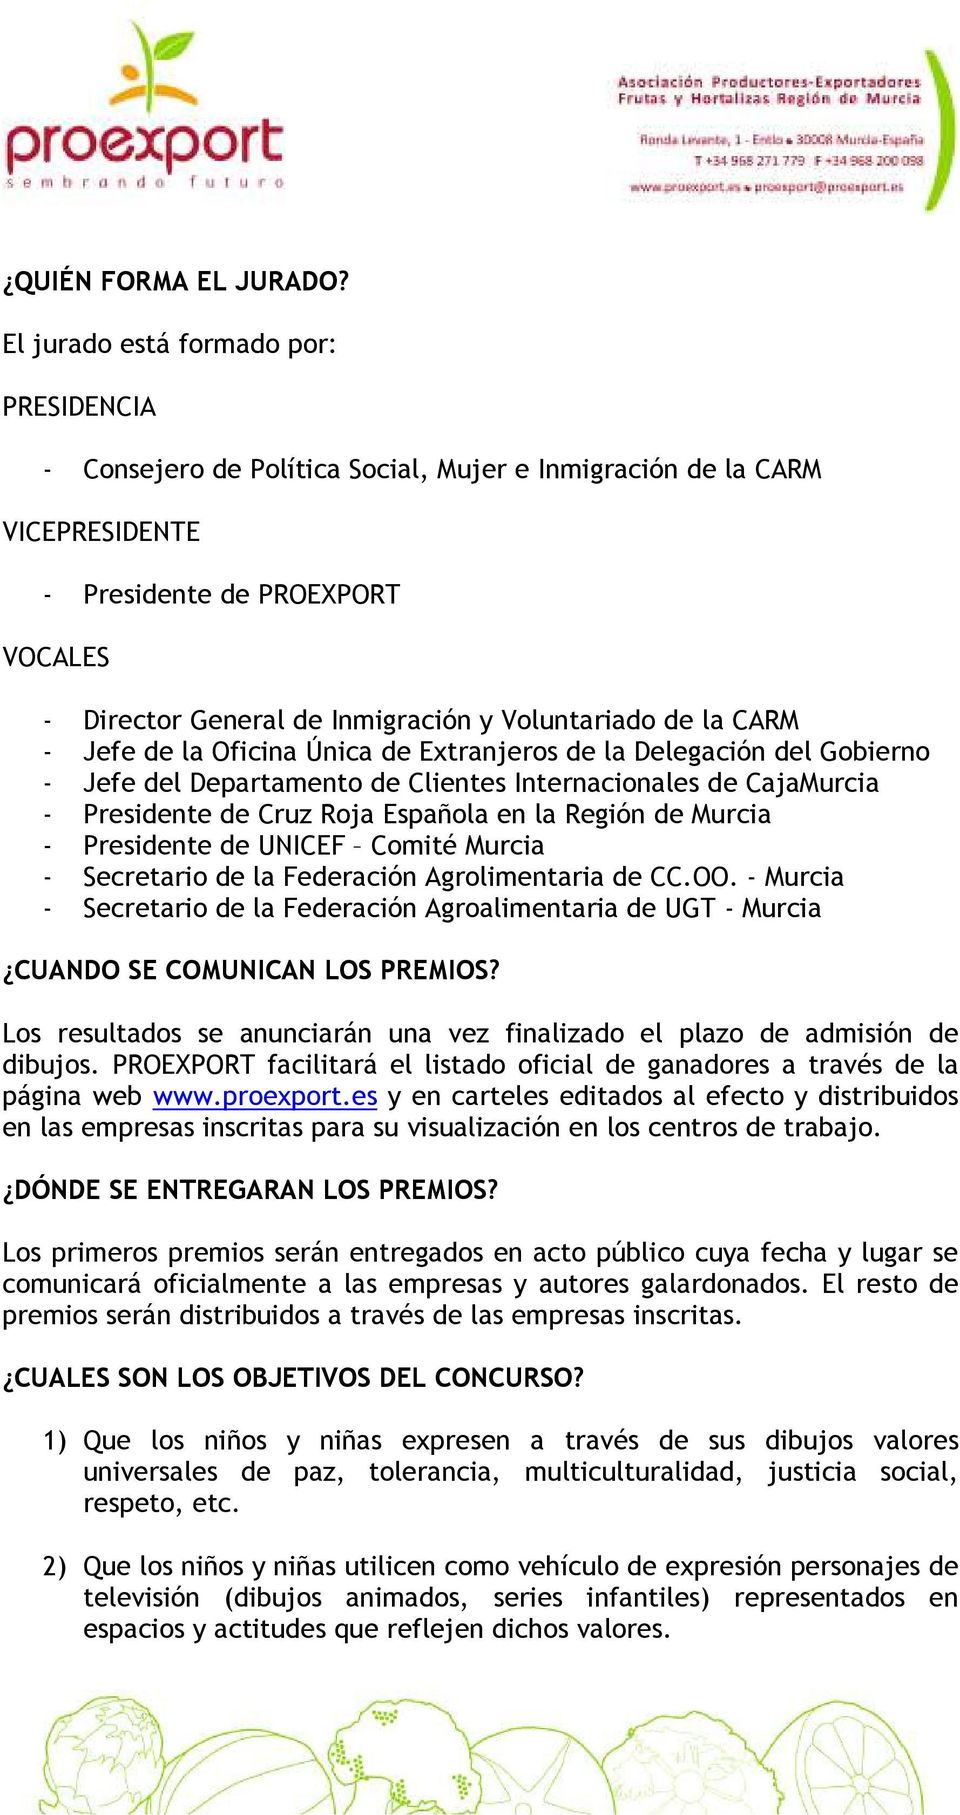 Voluntariado de la CARM - Jefe de la Oficina Única de Extranjeros de la Delegación del Gobierno - Jefe del Departamento de Clientes Internacionales de CajaMurcia - Presidente de Cruz Roja Española en